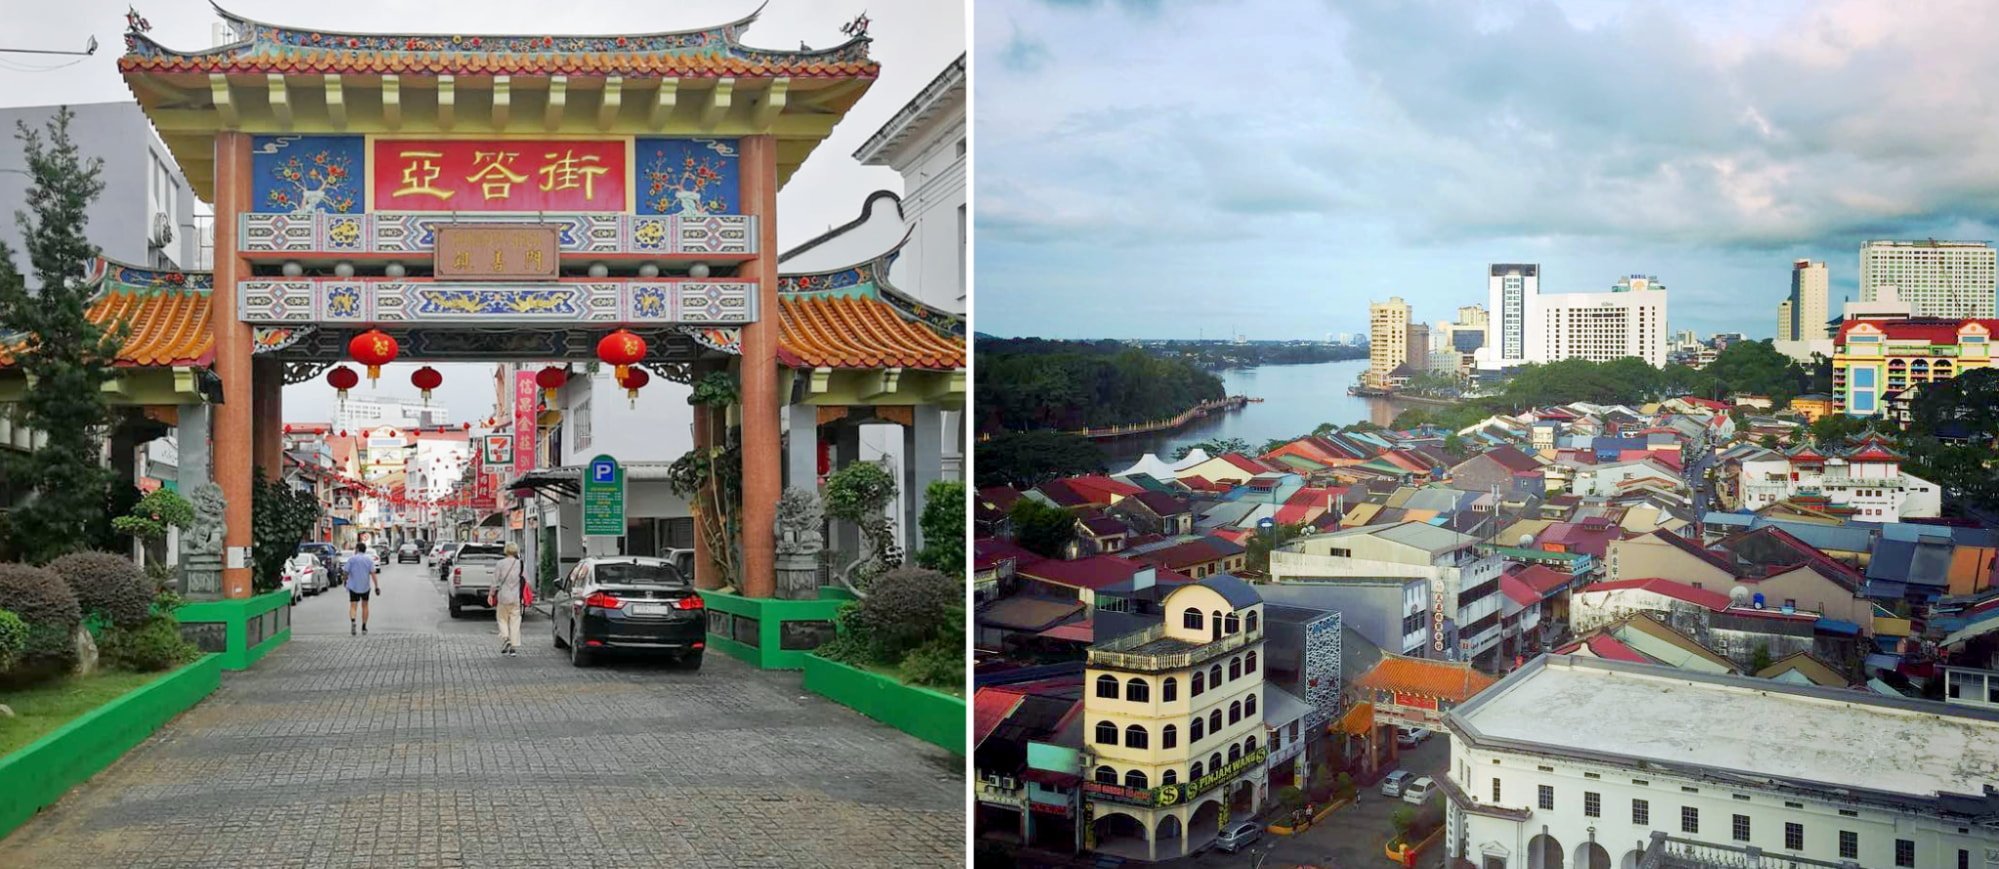 things to do in kuching - chinatown